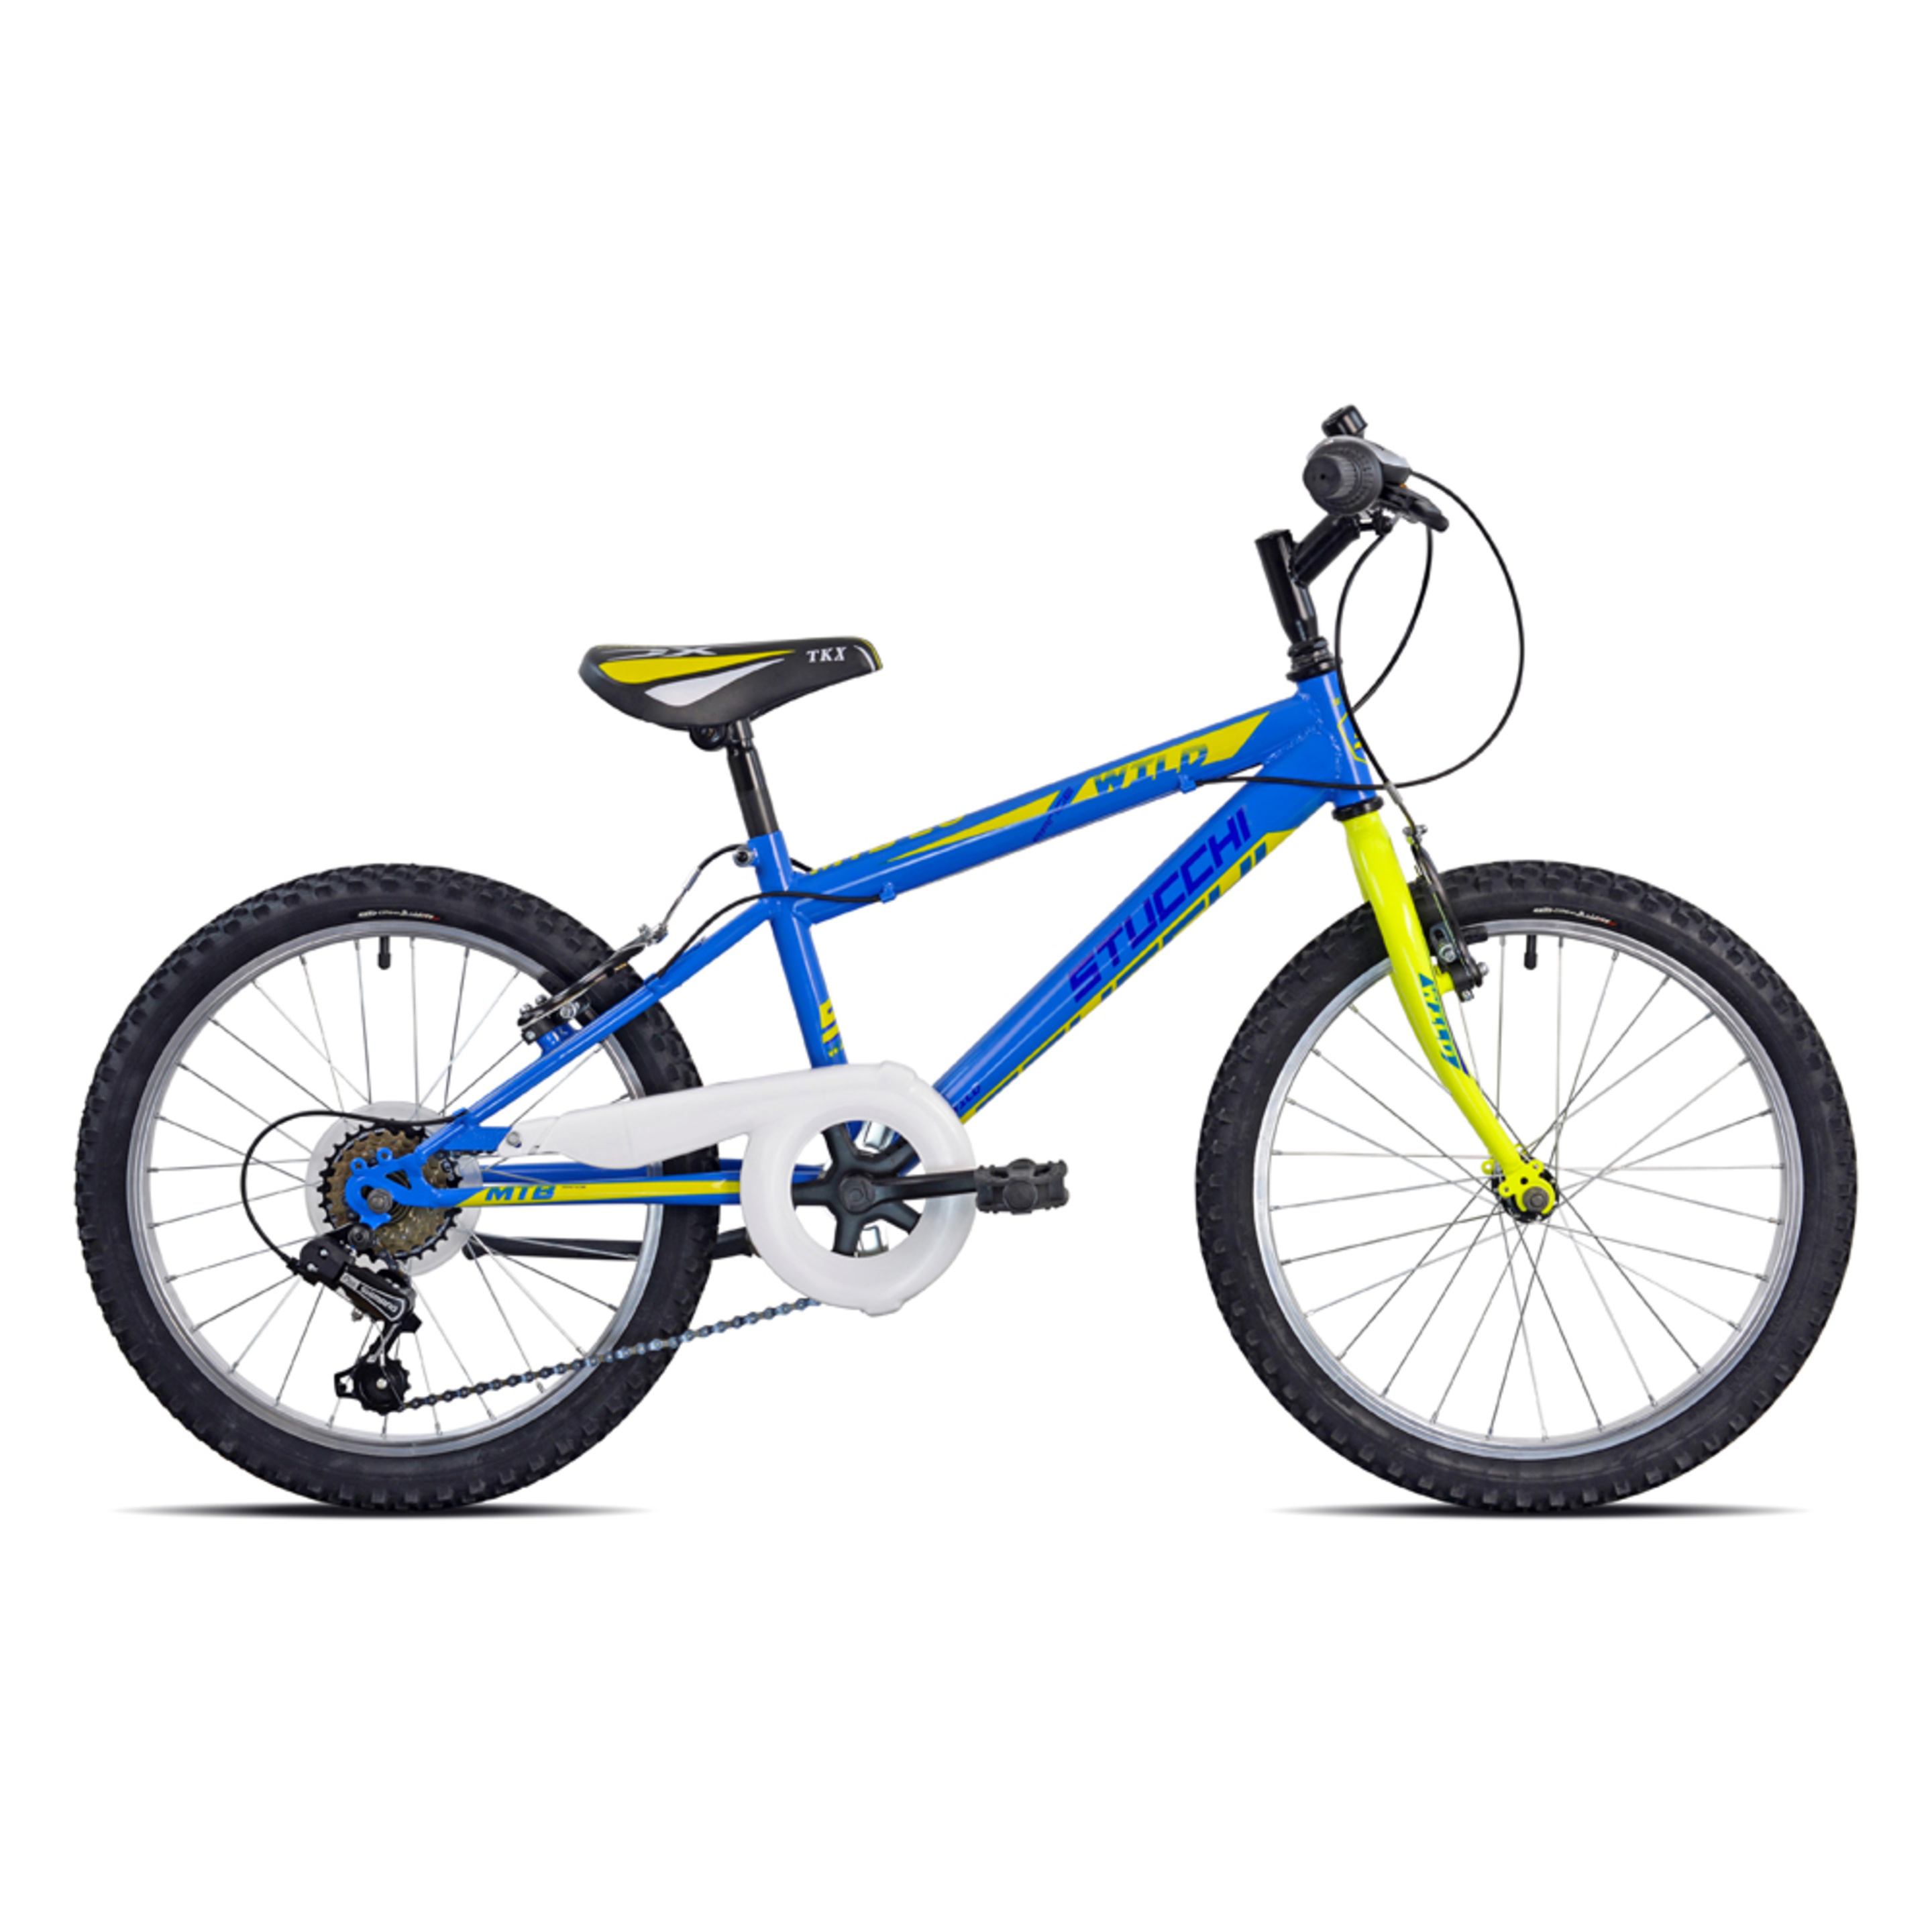 Bicicleta De Montaña Paara Niños Stucchi 20" 6v. - azul - 